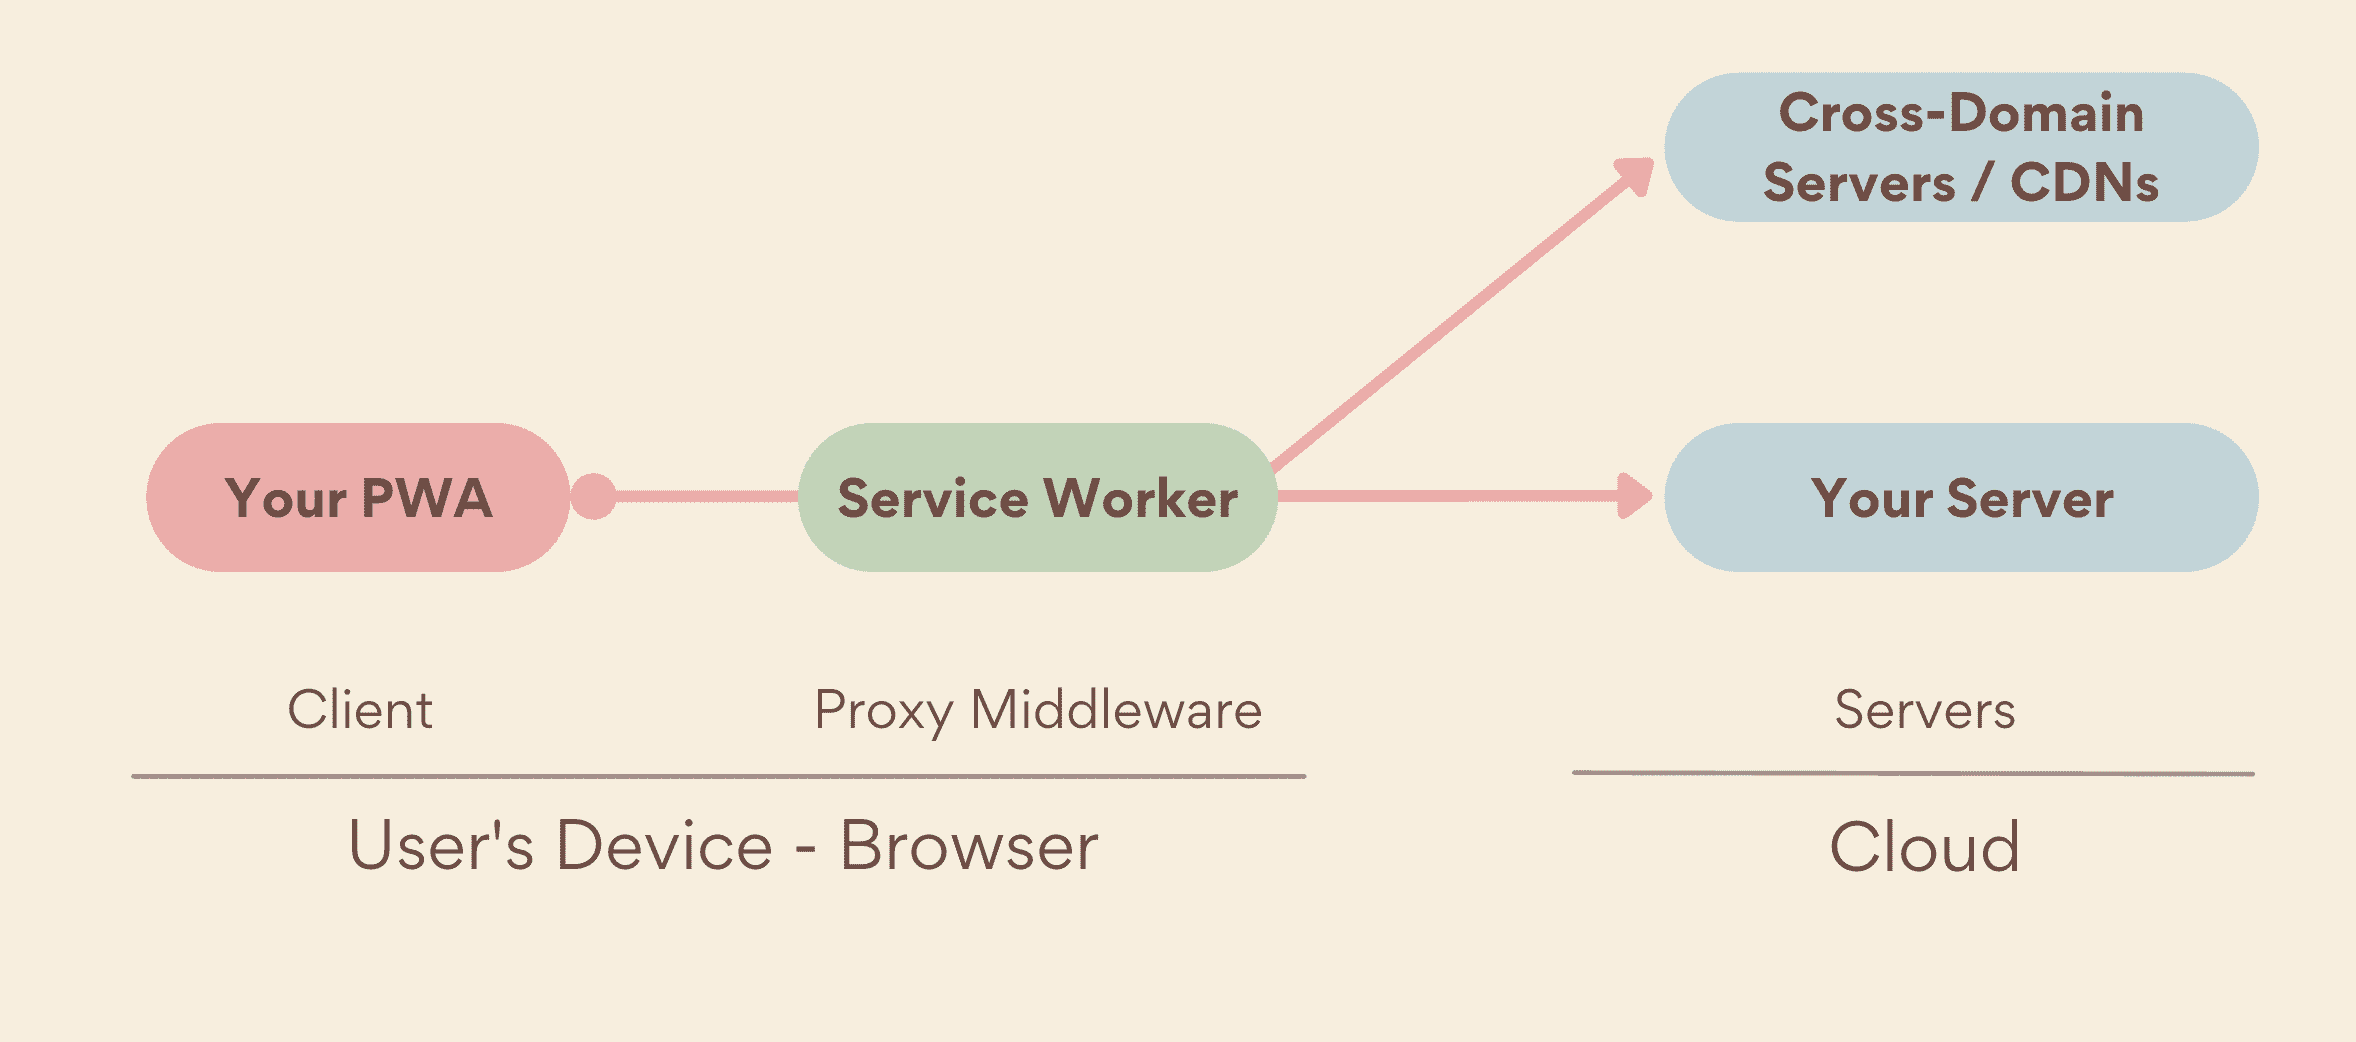 Một trình chạy dịch vụ đóng vai trò là proxy phần mềm trung gian, chạy phía thiết bị, giữa PWA và máy chủ, bao gồm cả máy chủ của riêng bạn và máy chủ nhiều miền.